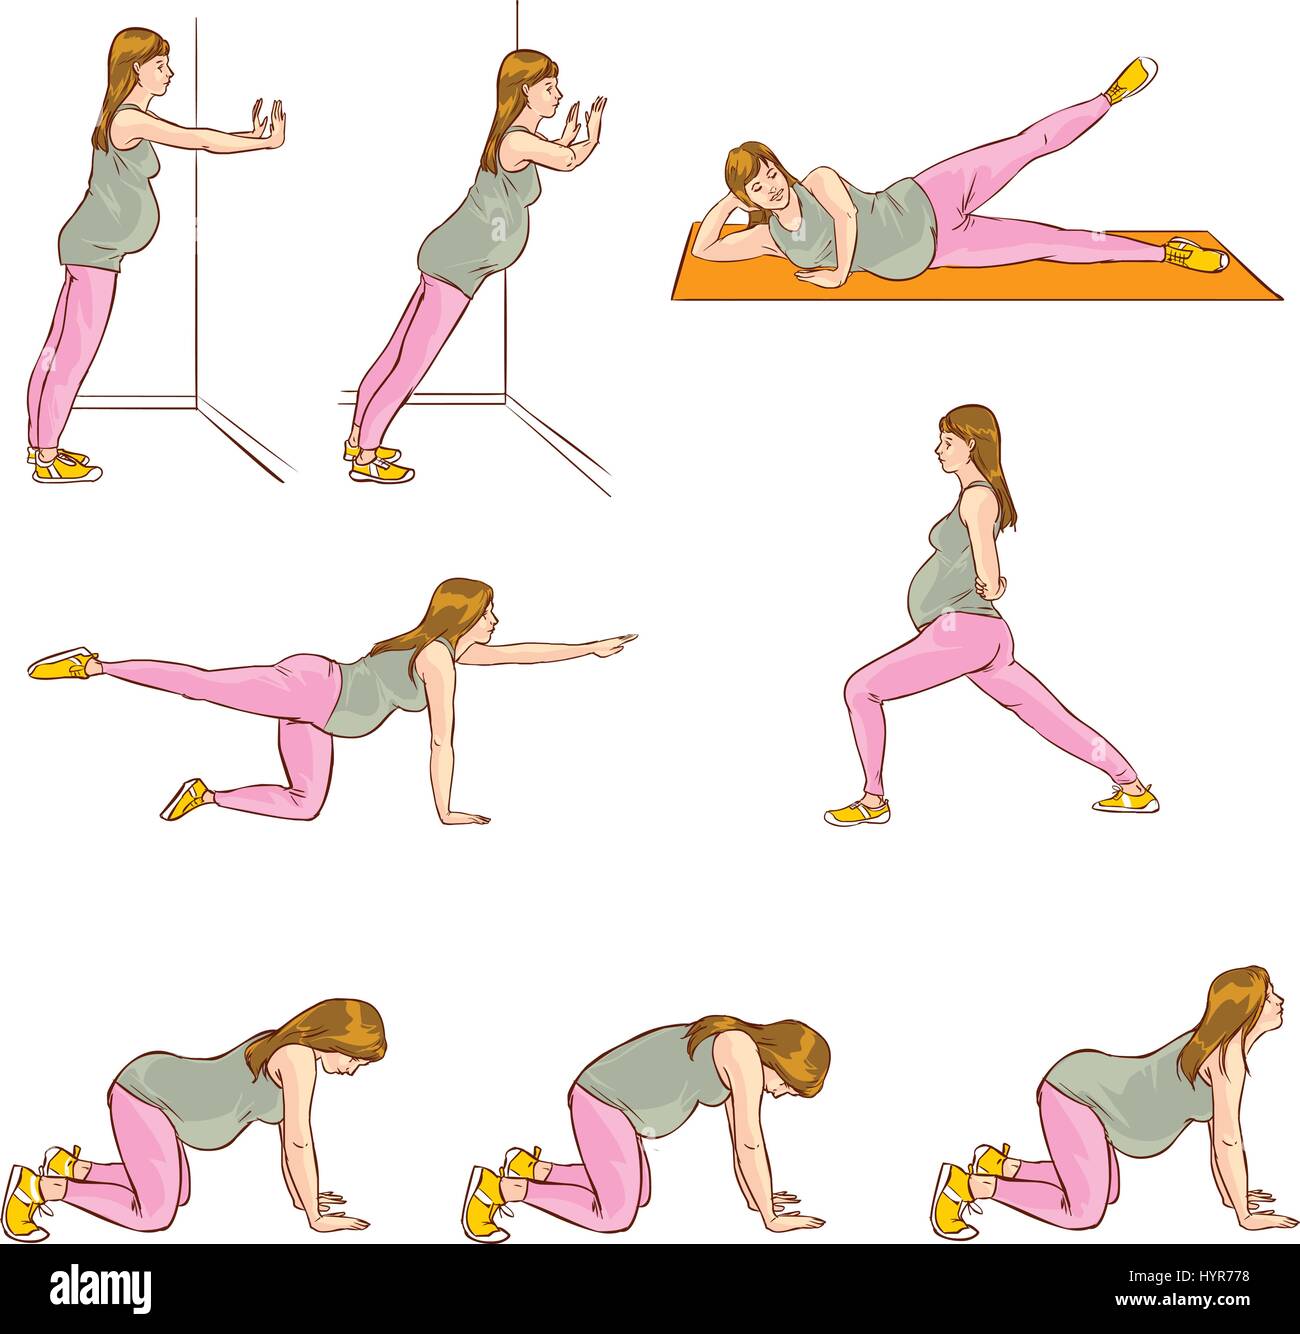 упражнения для груди во время беременности фото 5